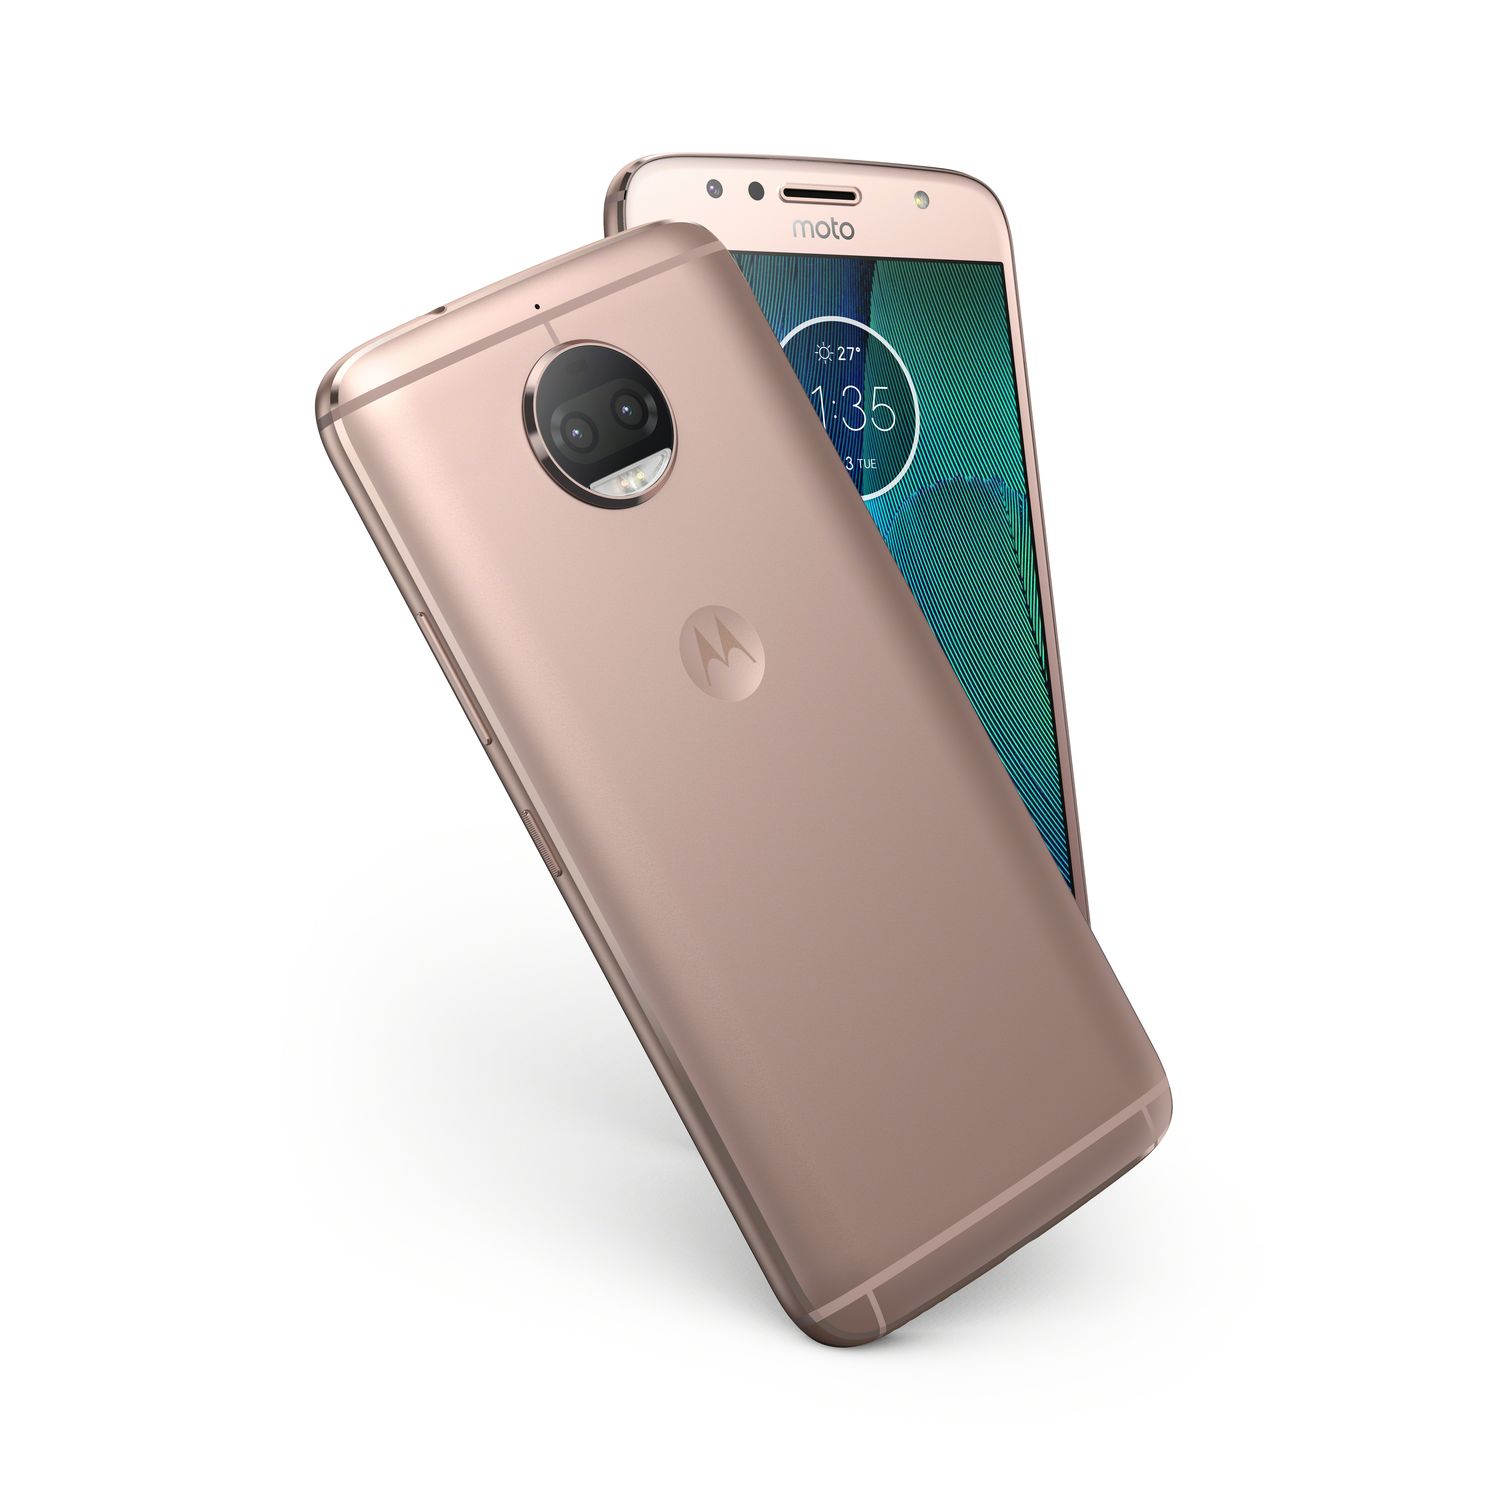 Motorola Moto G5S Plus, análisis, precio y opiniones 2